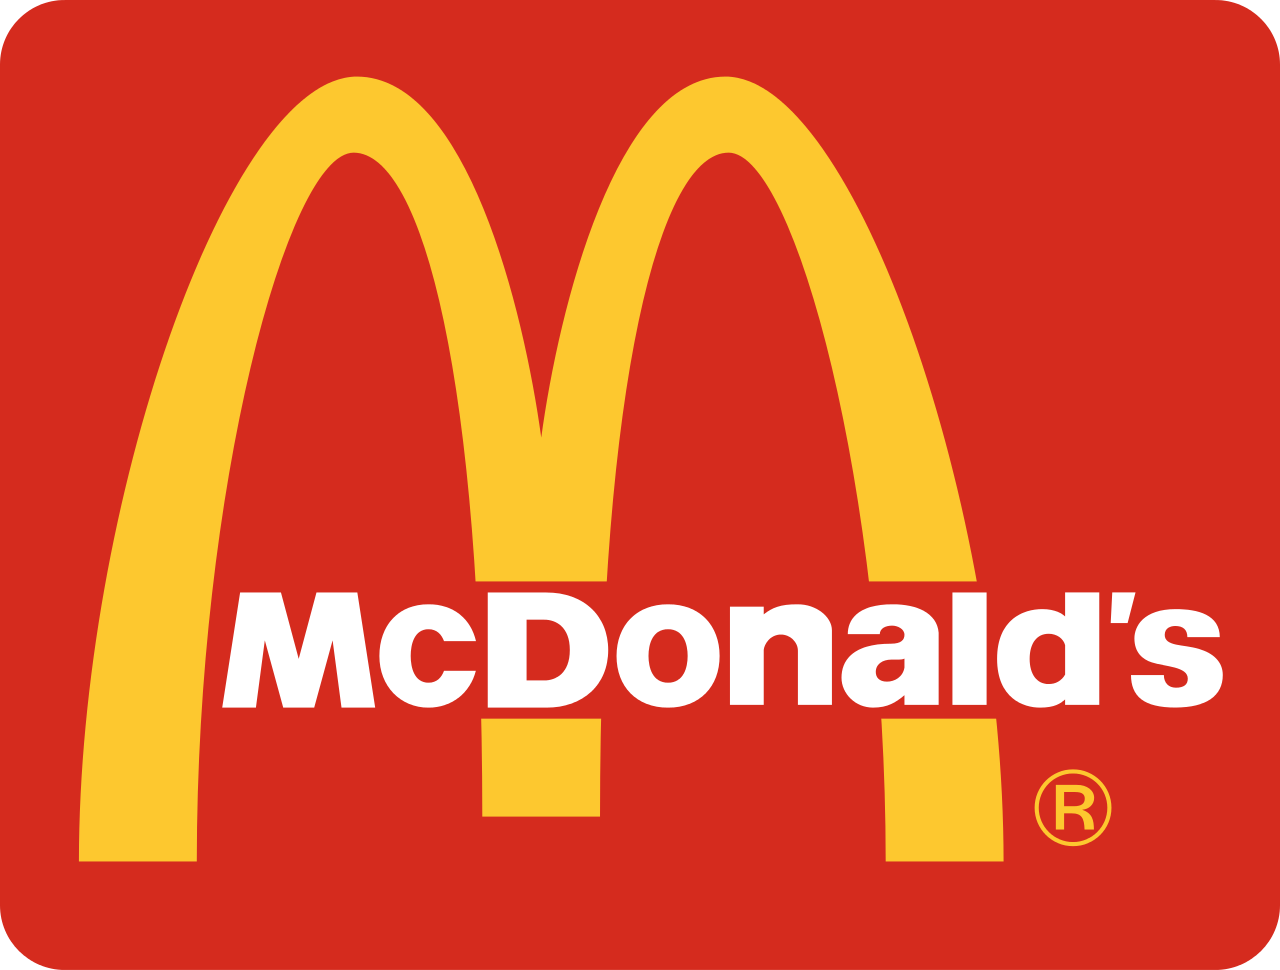 Eladta romániai üzletét az amerikai McDonald's gyorsétteremlánc